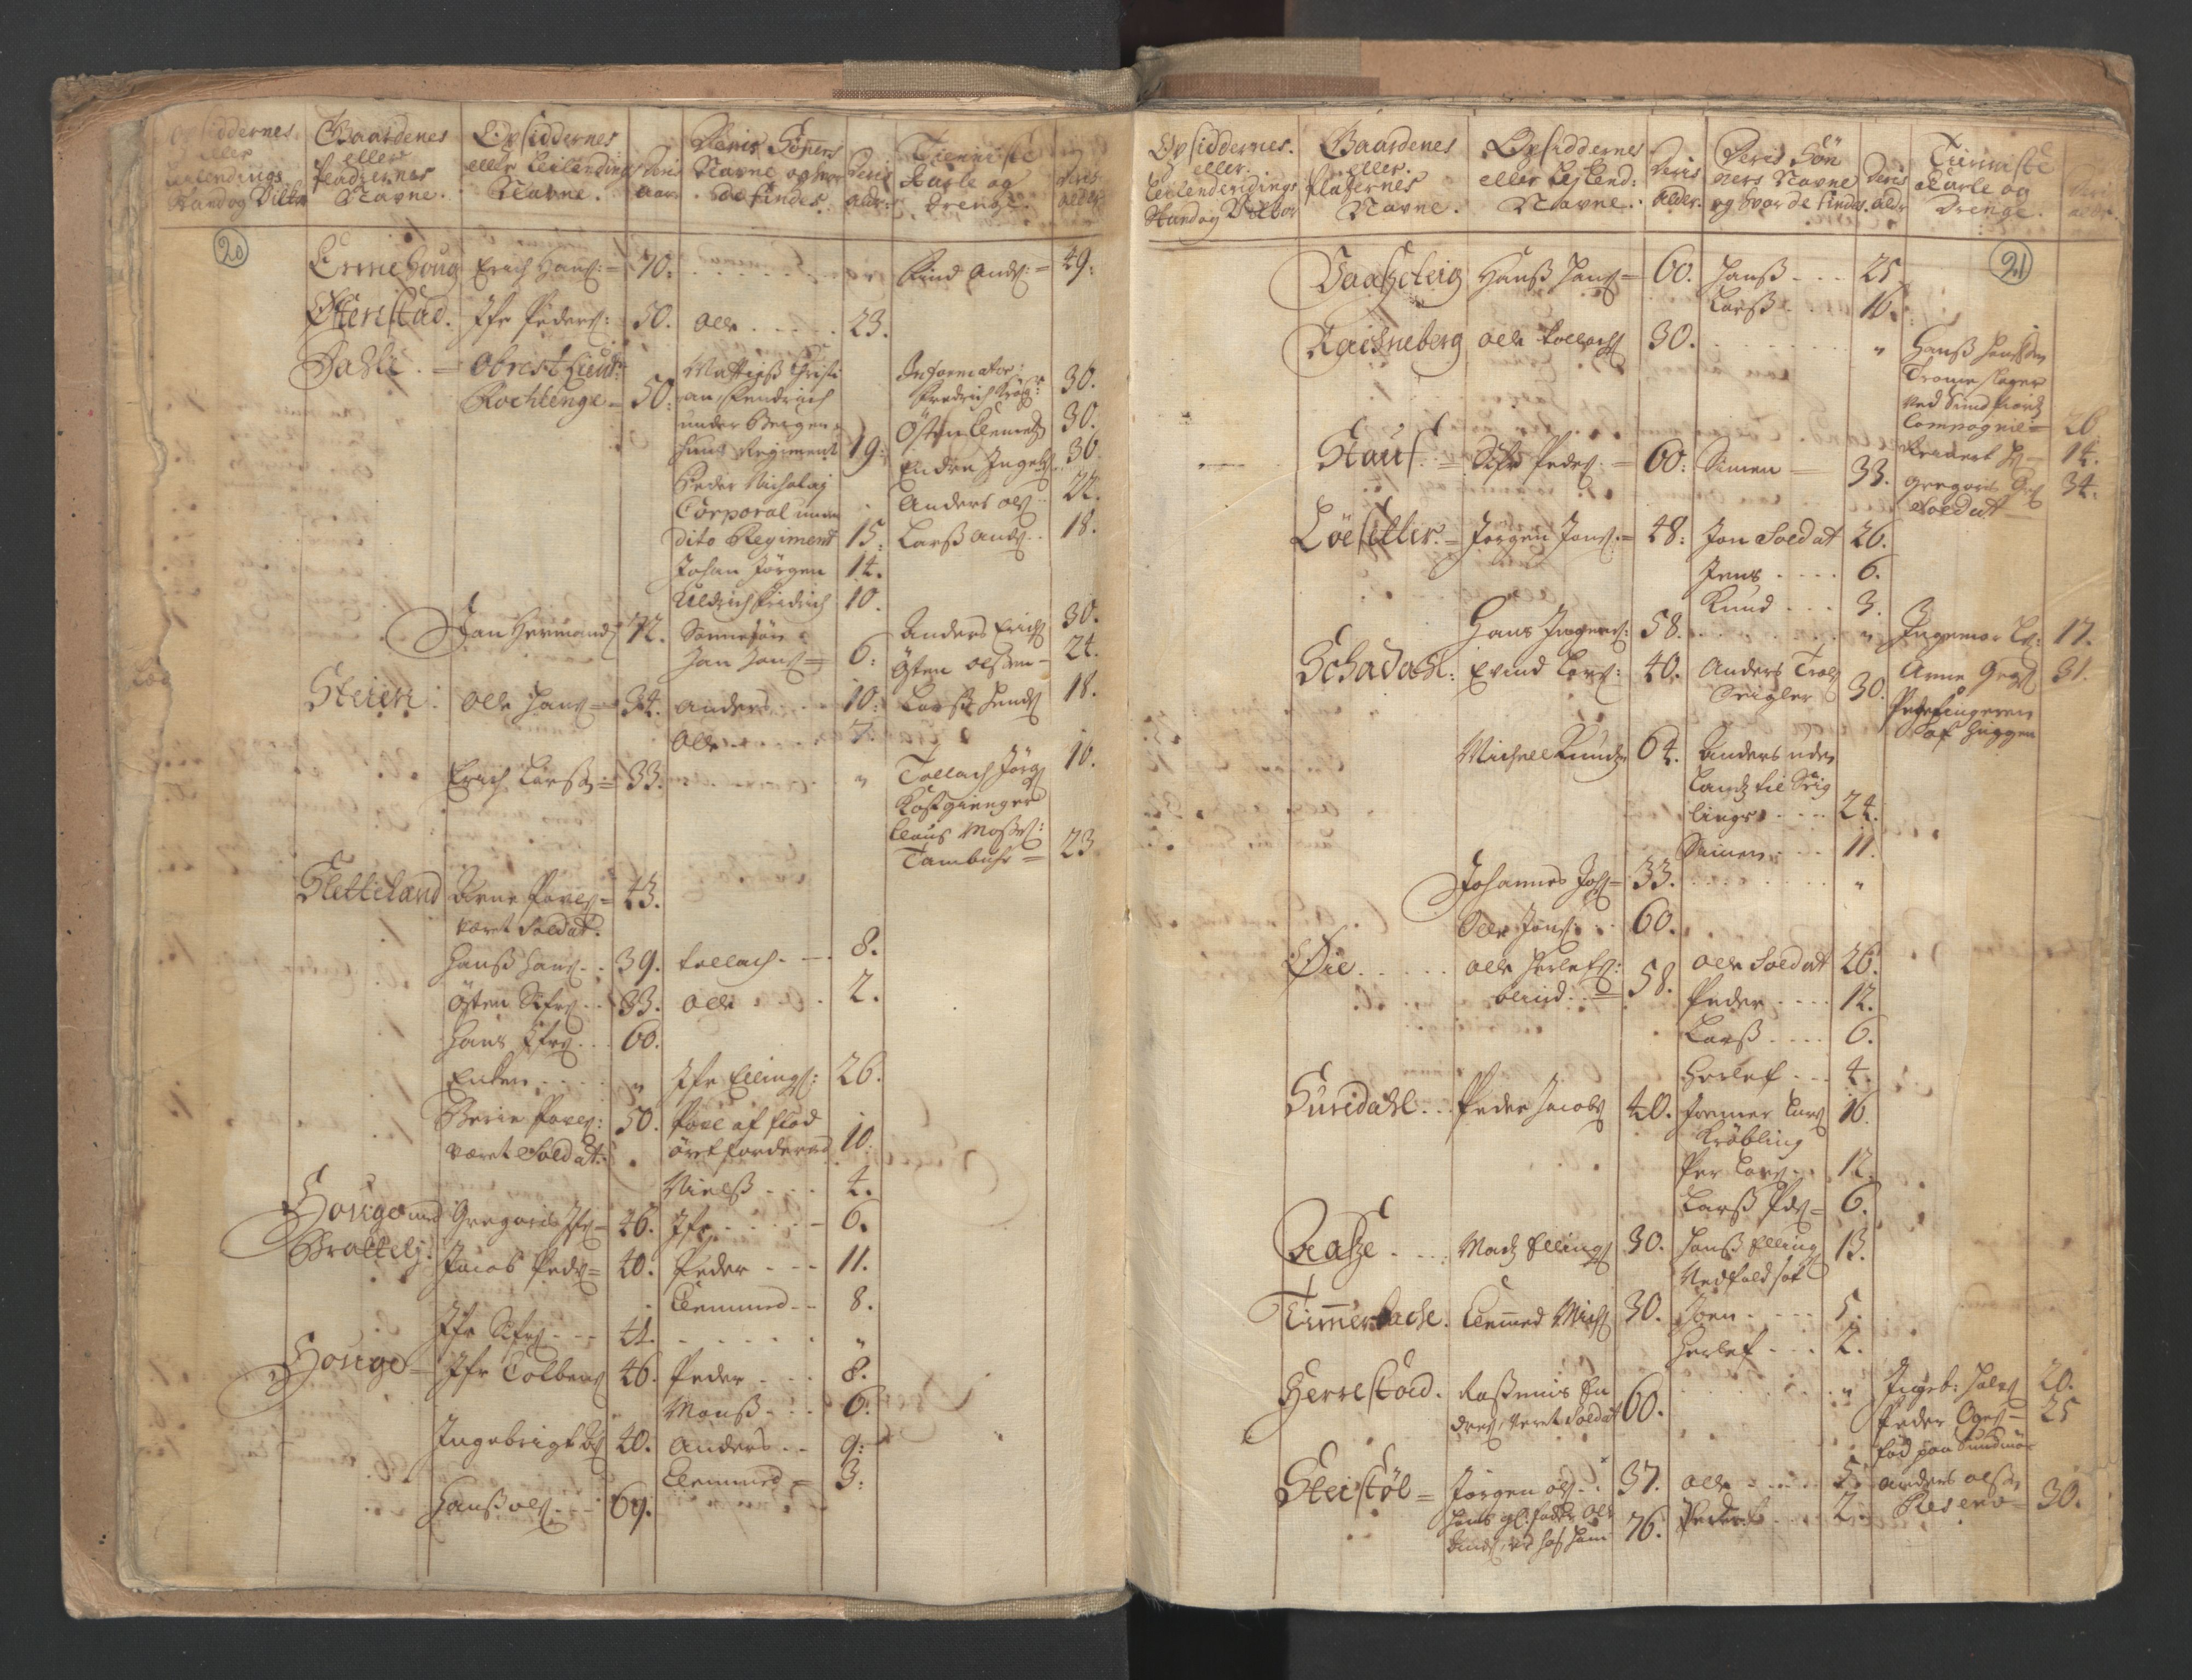 RA, Manntallet 1701, nr. 9: Sunnfjord fogderi, Nordfjord fogderi og Svanø birk, 1701, s. 20-21